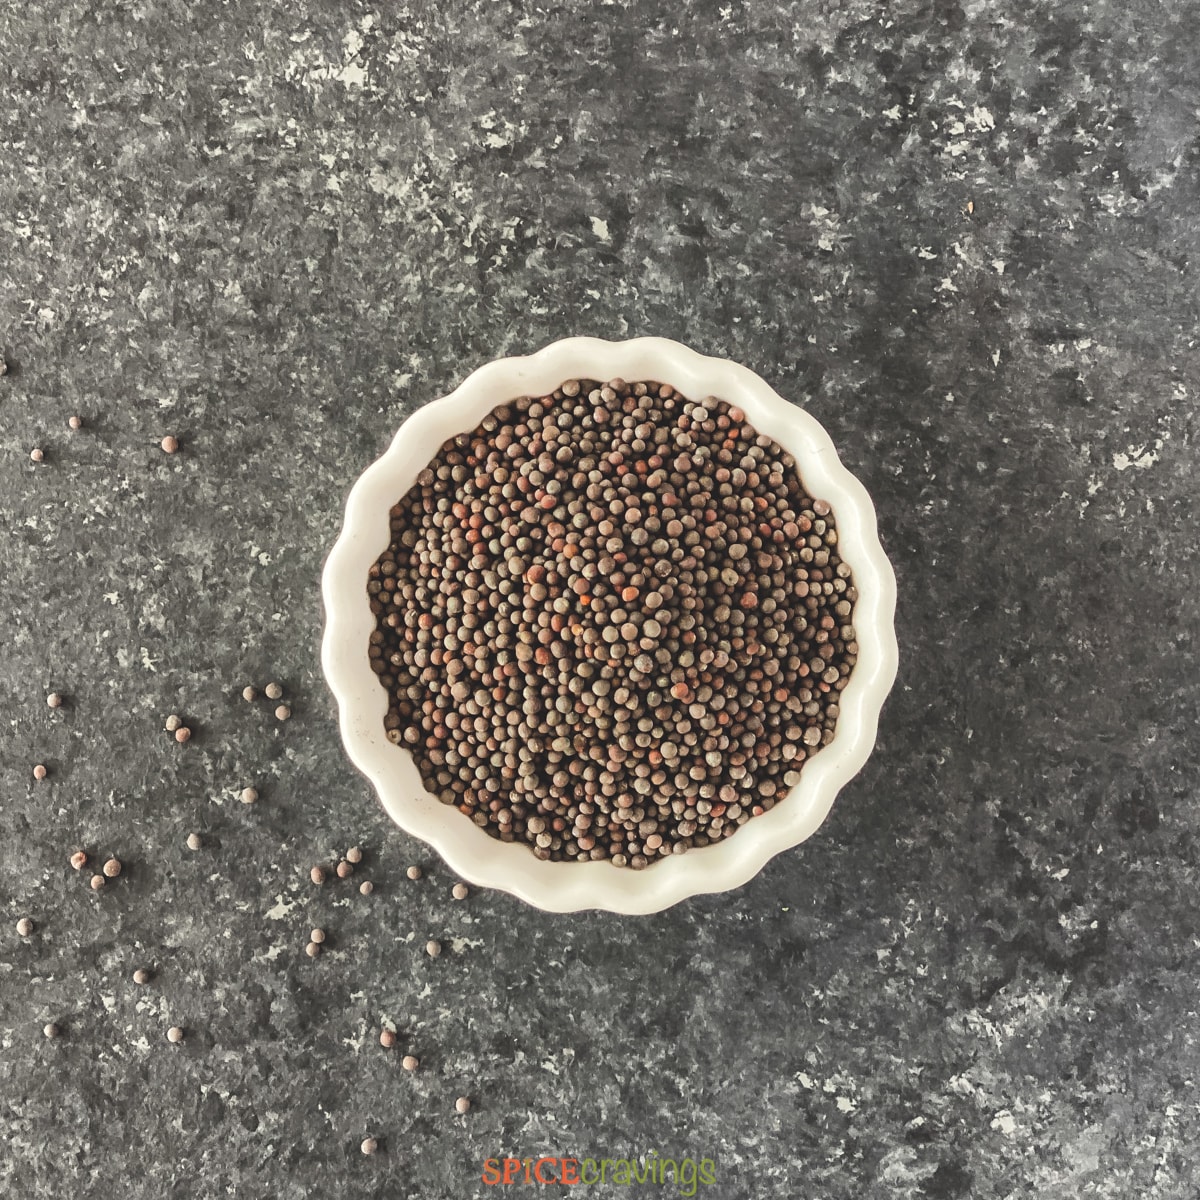 black mustard seeds in white bowl